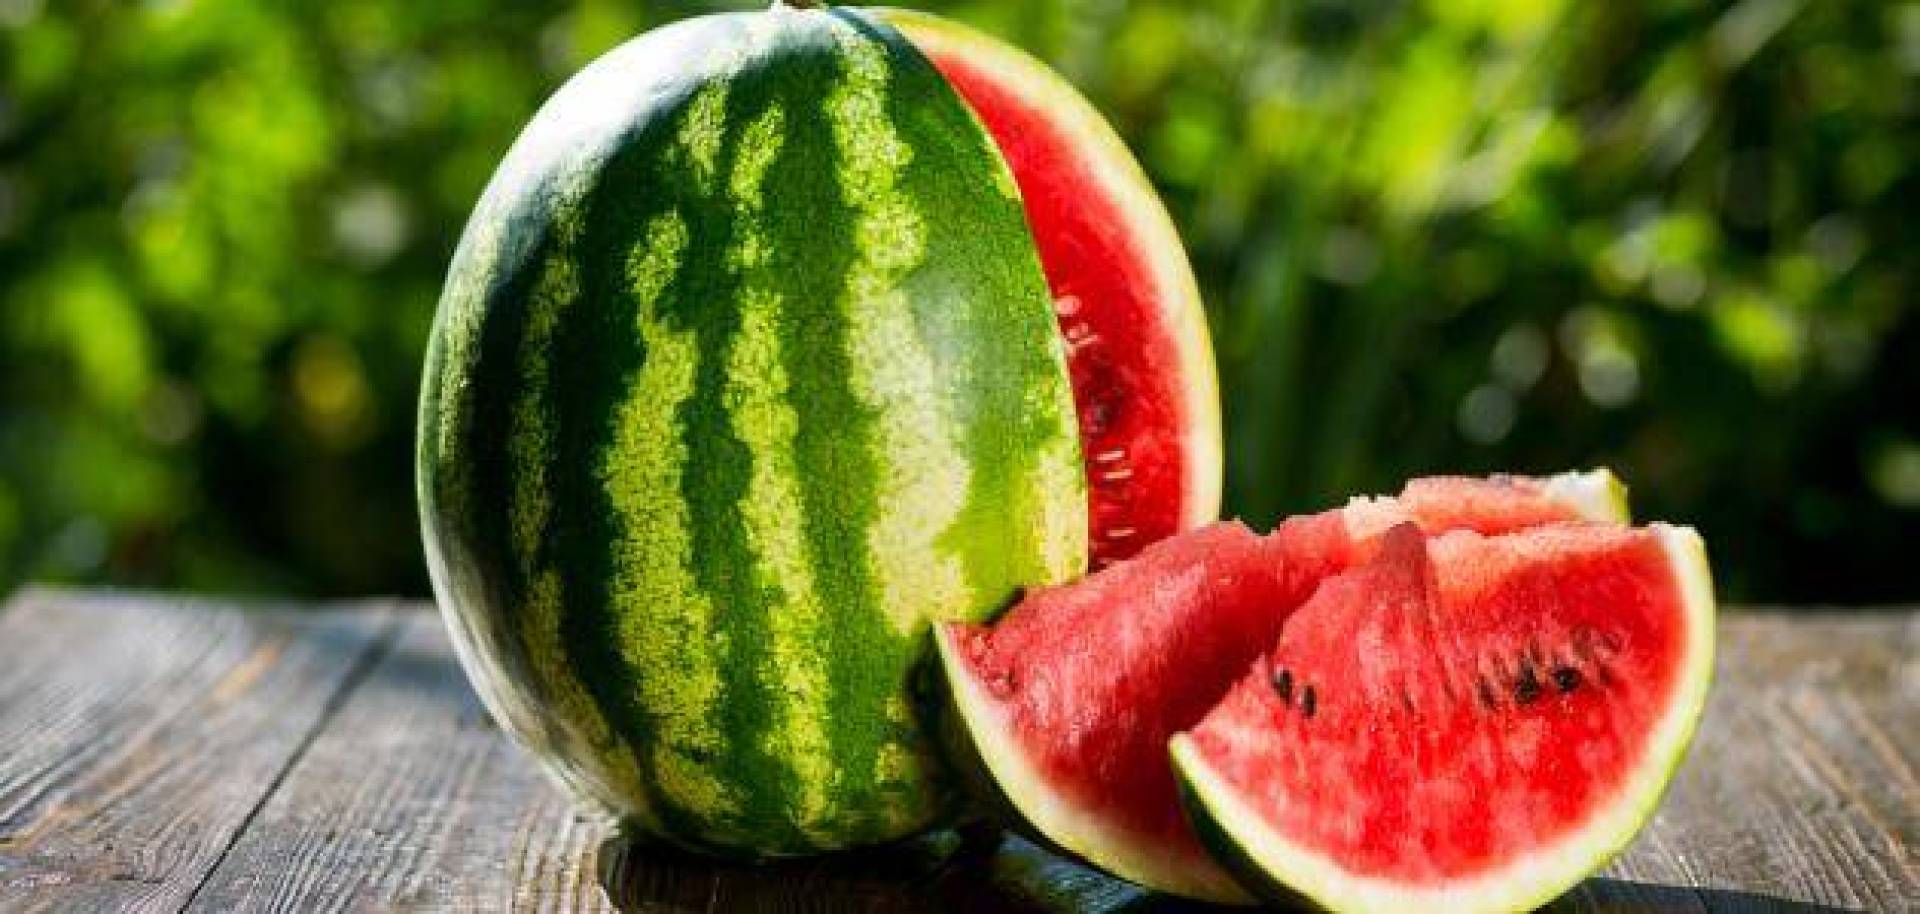 البطيخ الأحمر فاكهة الصيف اللذيذة ..تعرف على فوائده الصحية